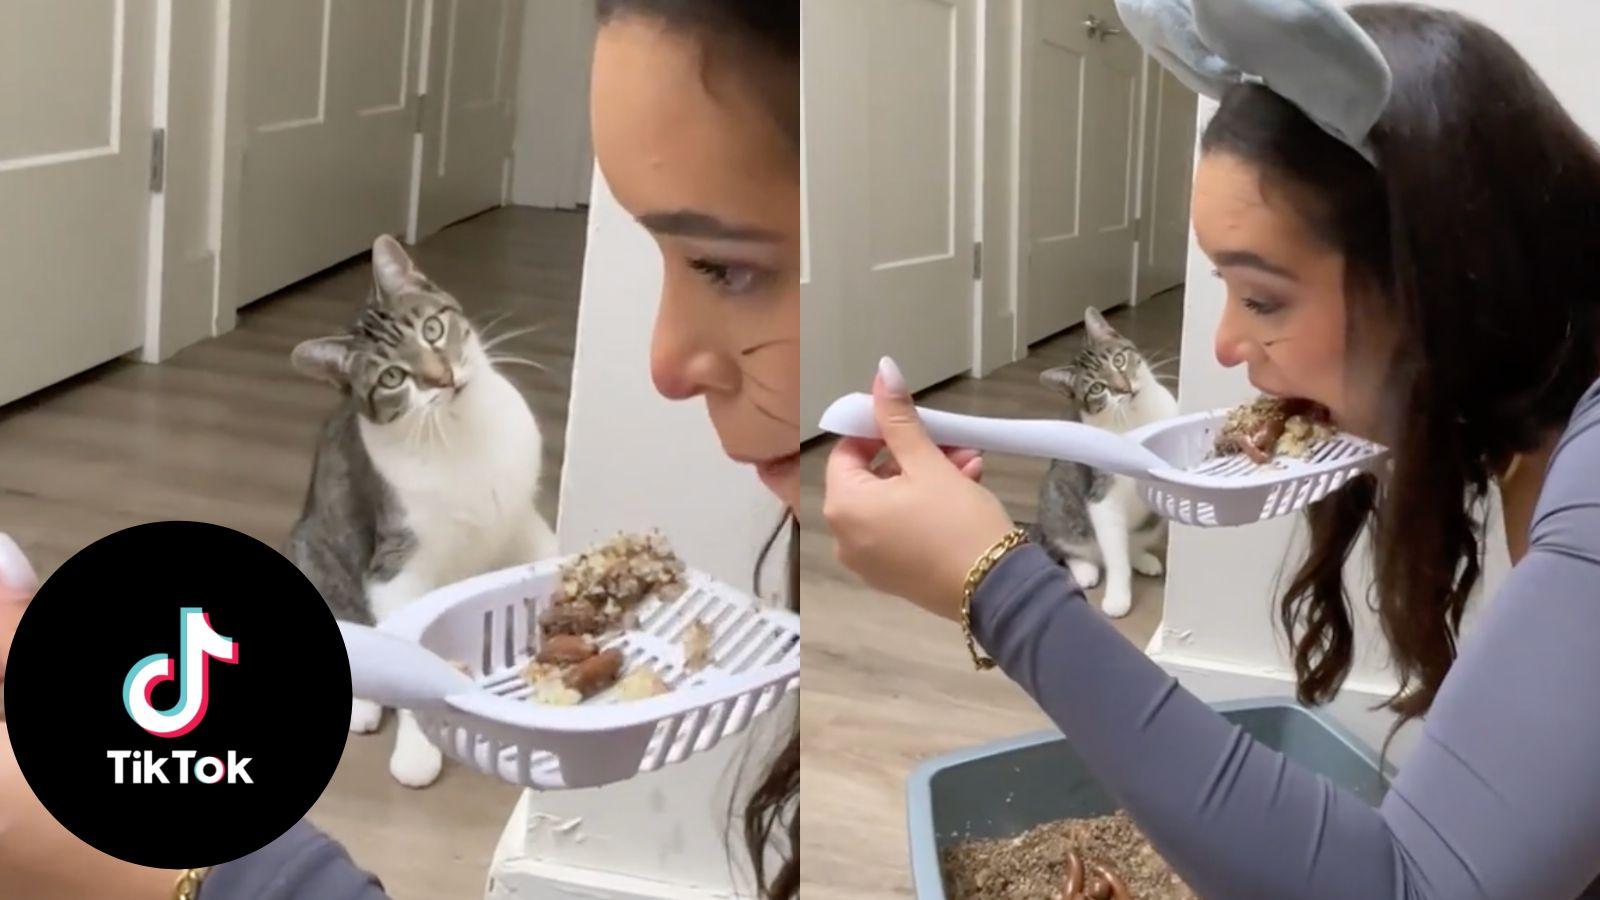 TikToker pranks cat by pretending to eat from litter box